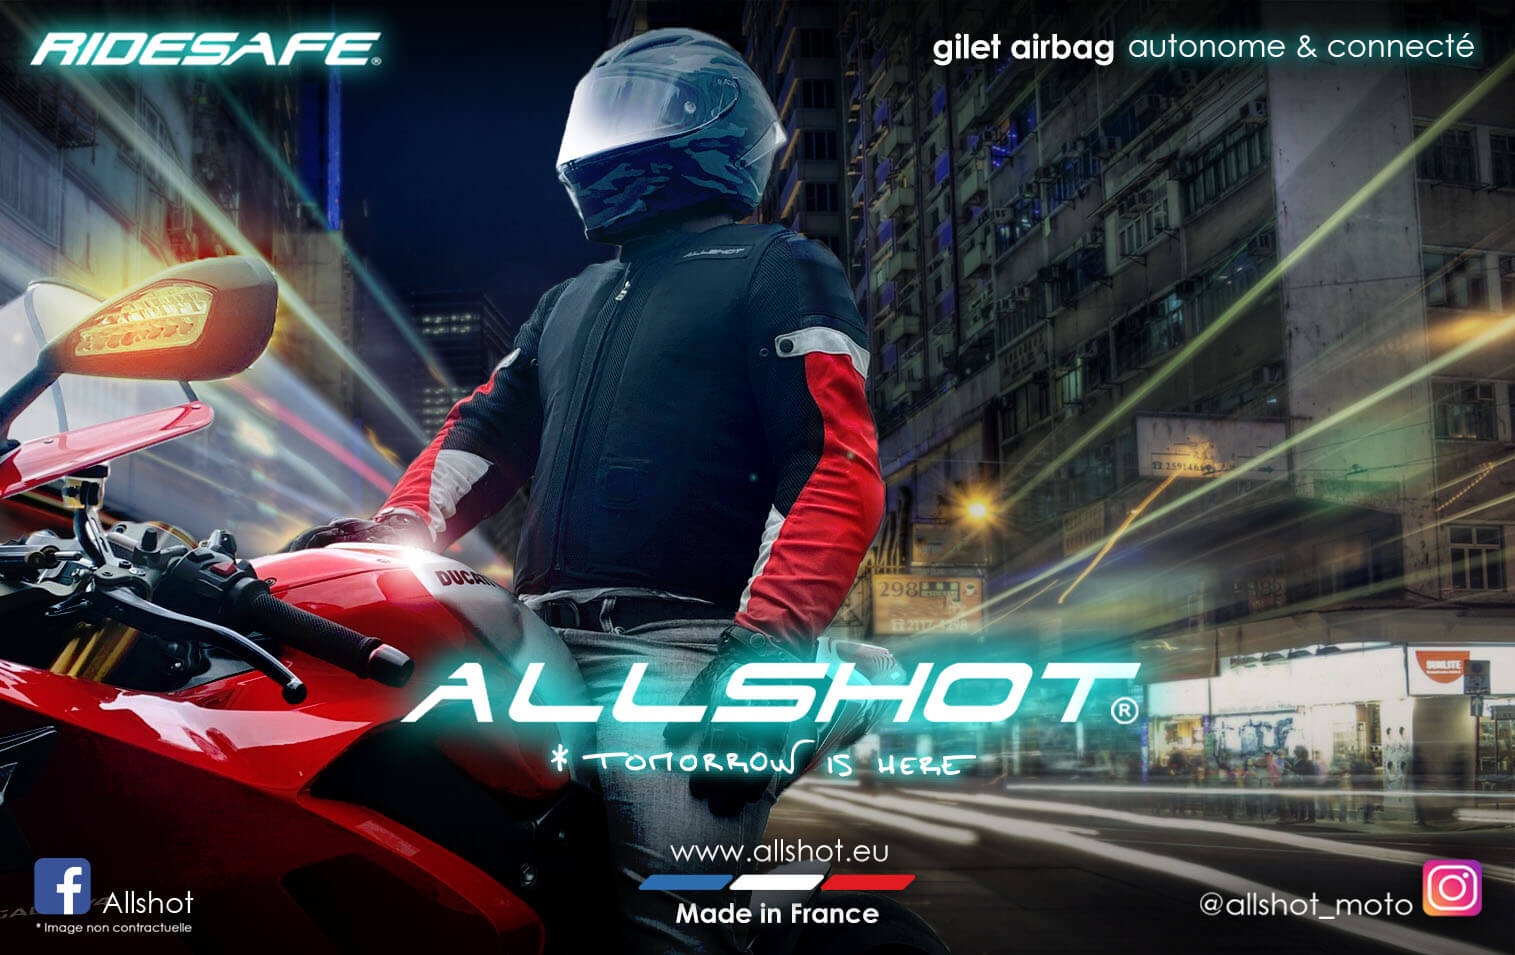 Gilet airbag Ridesafe